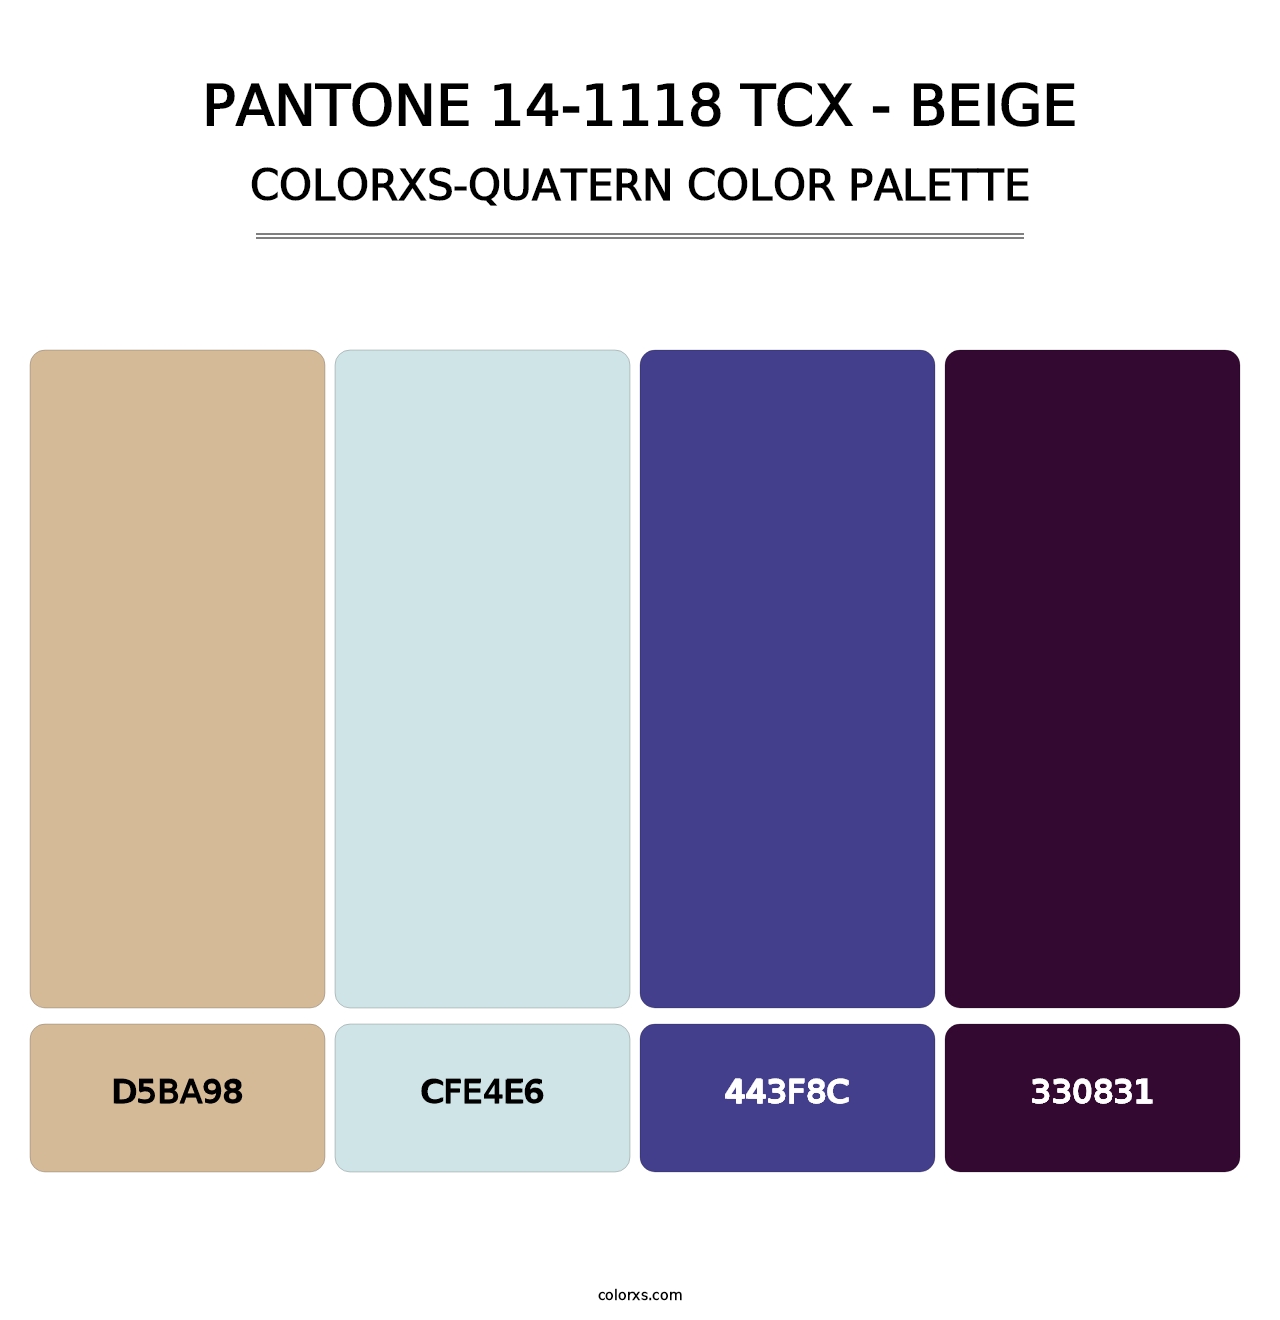 PANTONE 14-1118 TCX - Beige - Colorxs Quatern Palette